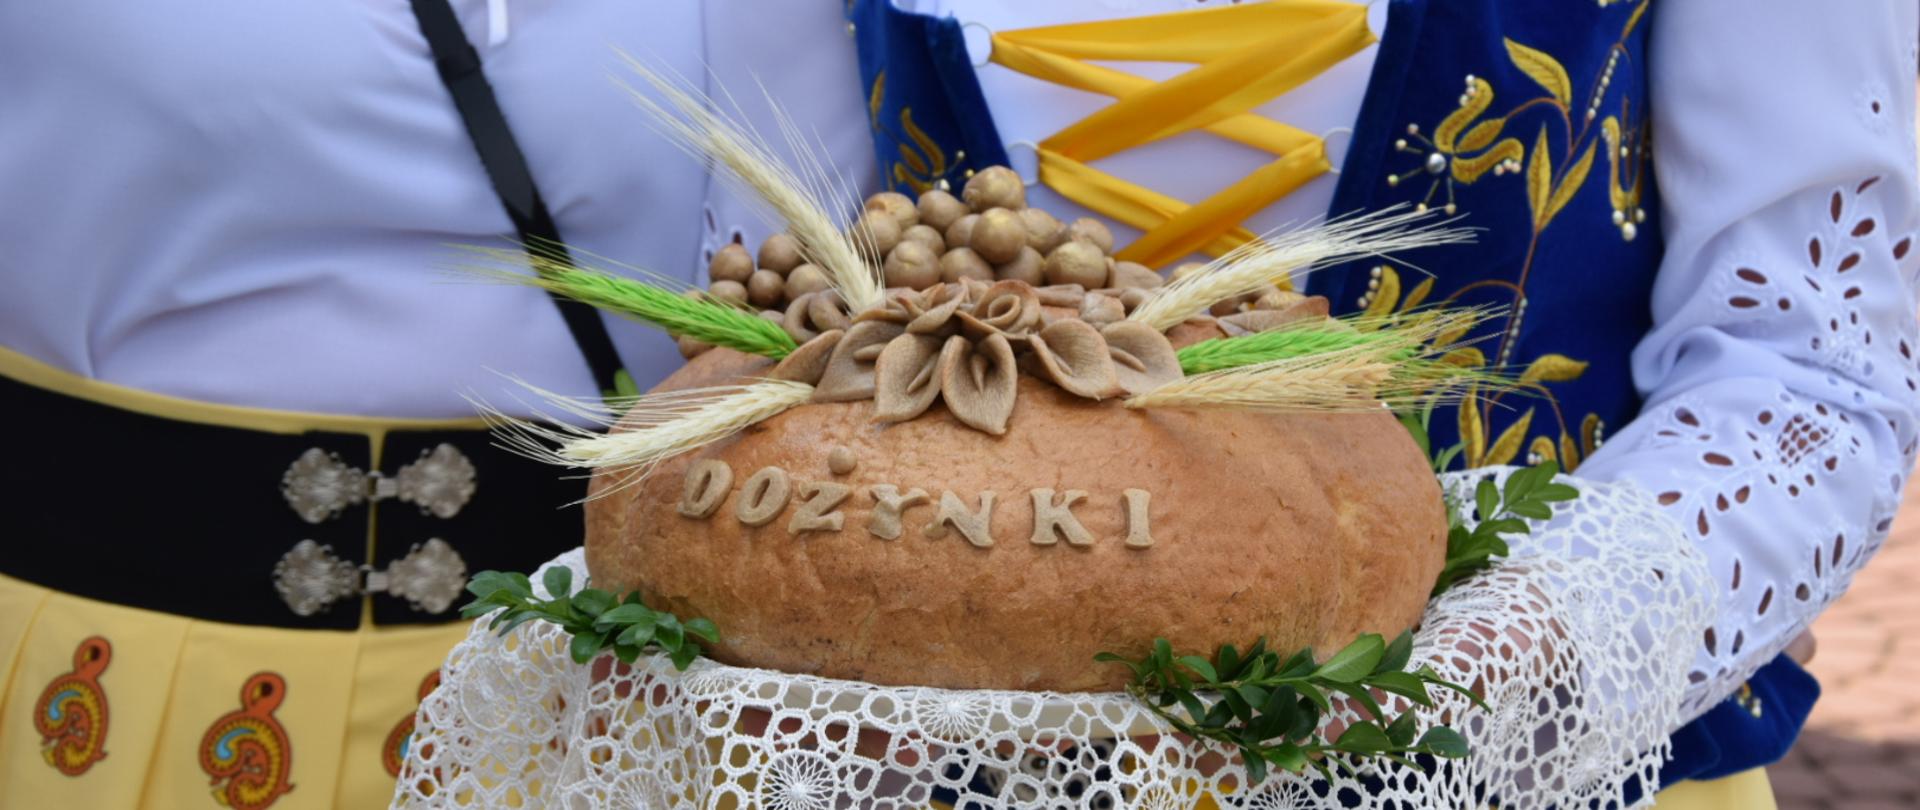 Bochen chleba z napisem dożynki trzymany przez parę góralską